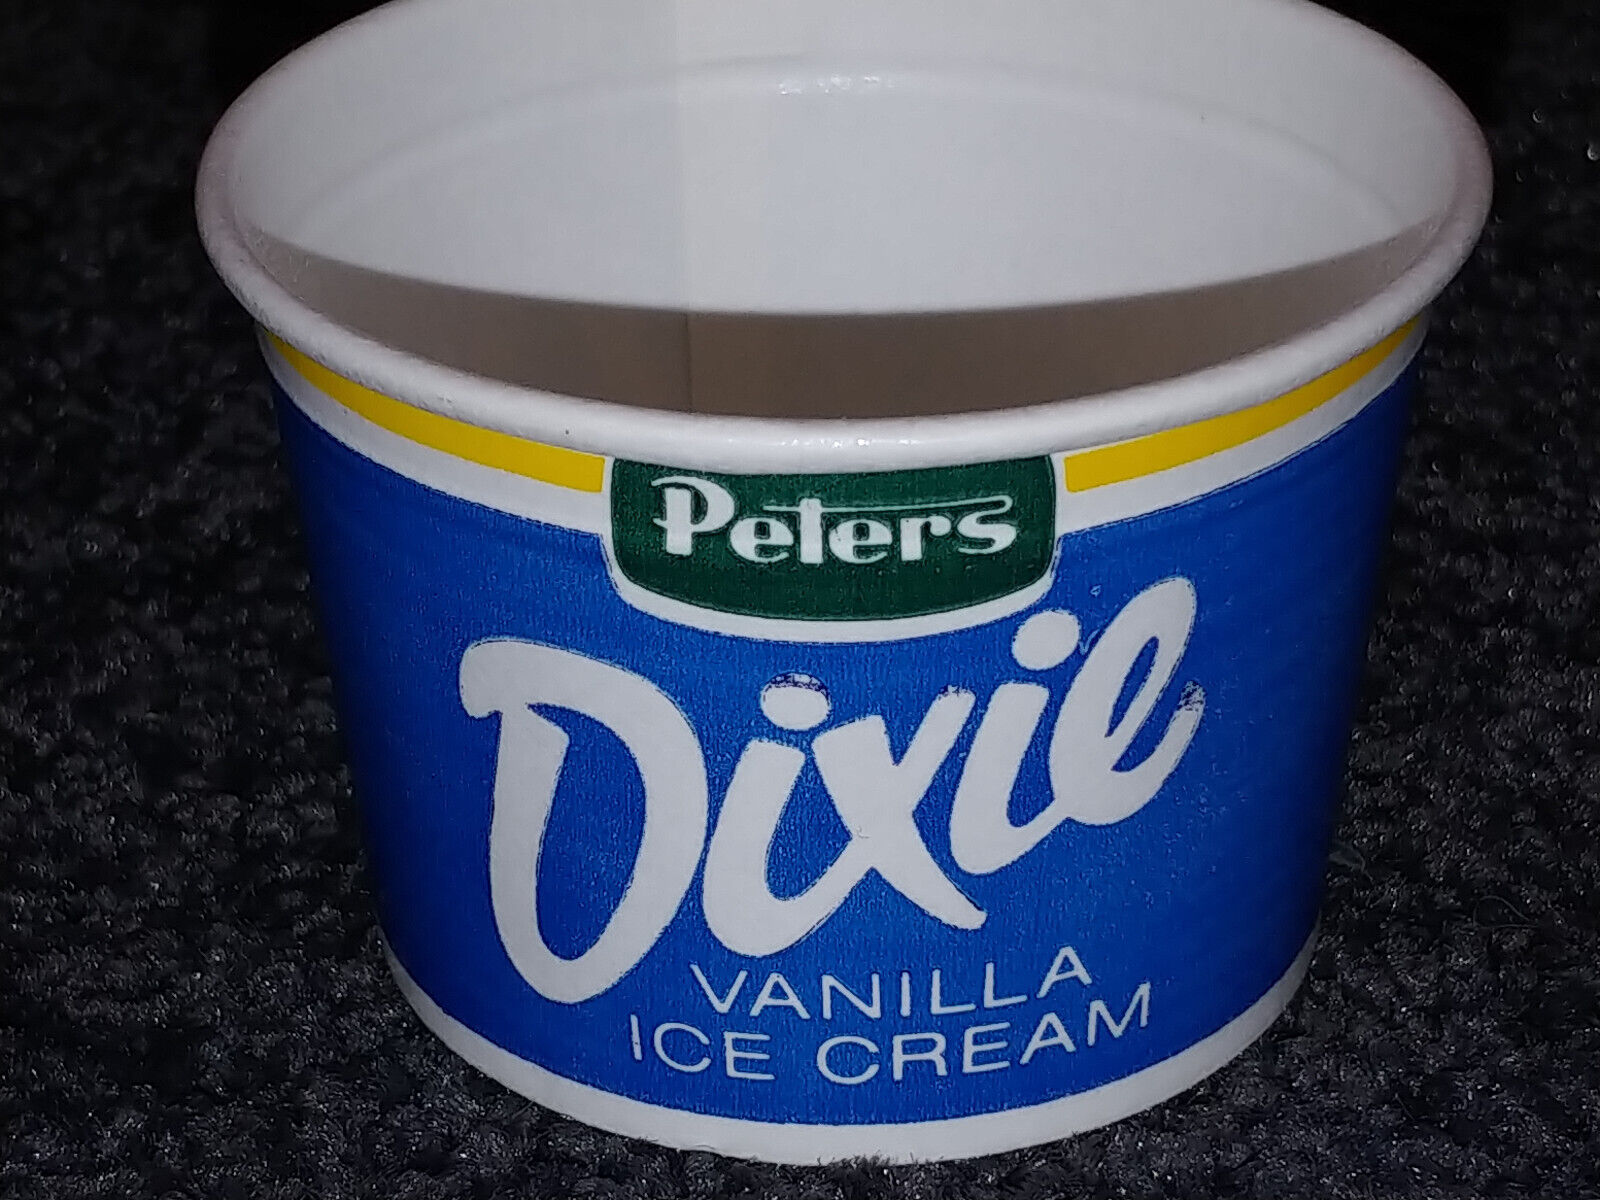 Peters Dixie cup.jpg